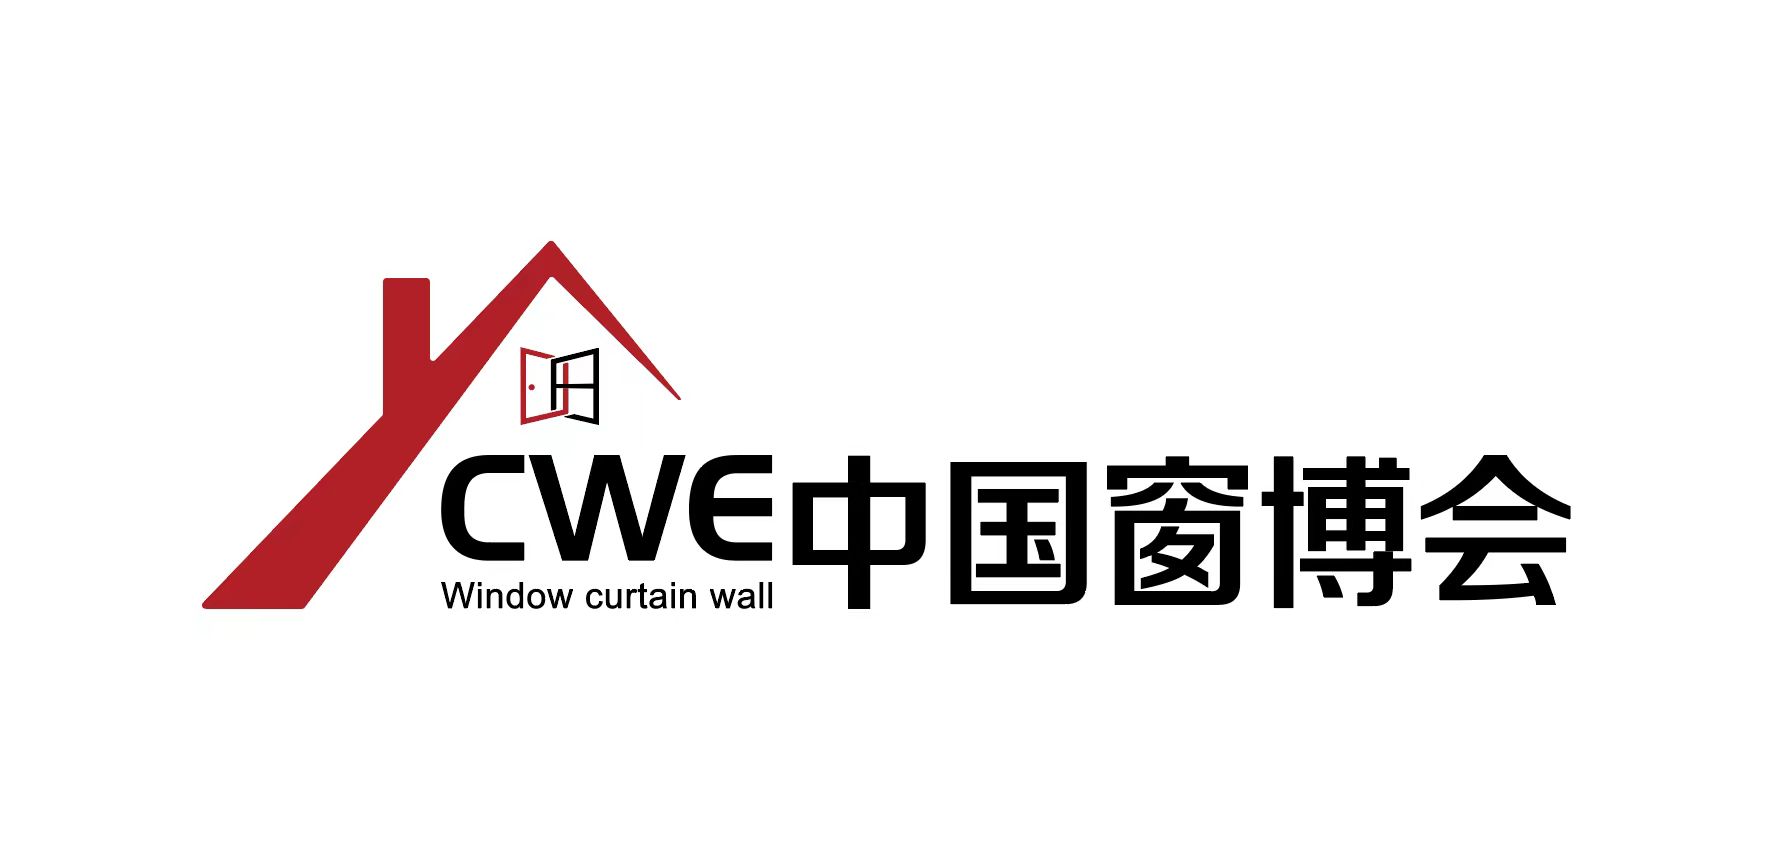 CWE中国北京国际系统门窗及幕墙博览会